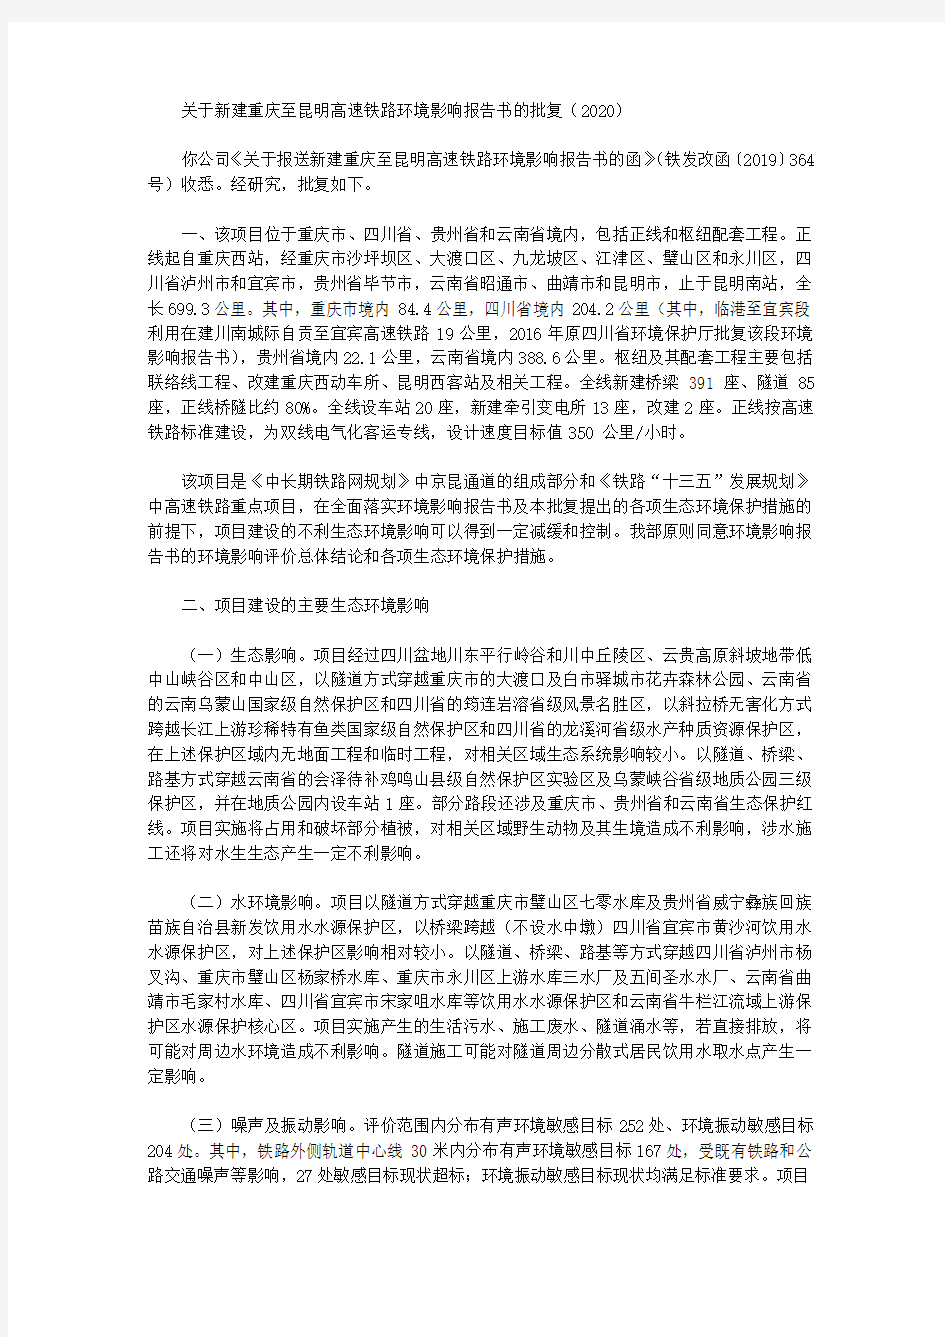 关于新建重庆至昆明高速铁路环境影响报告书的批复(2020)